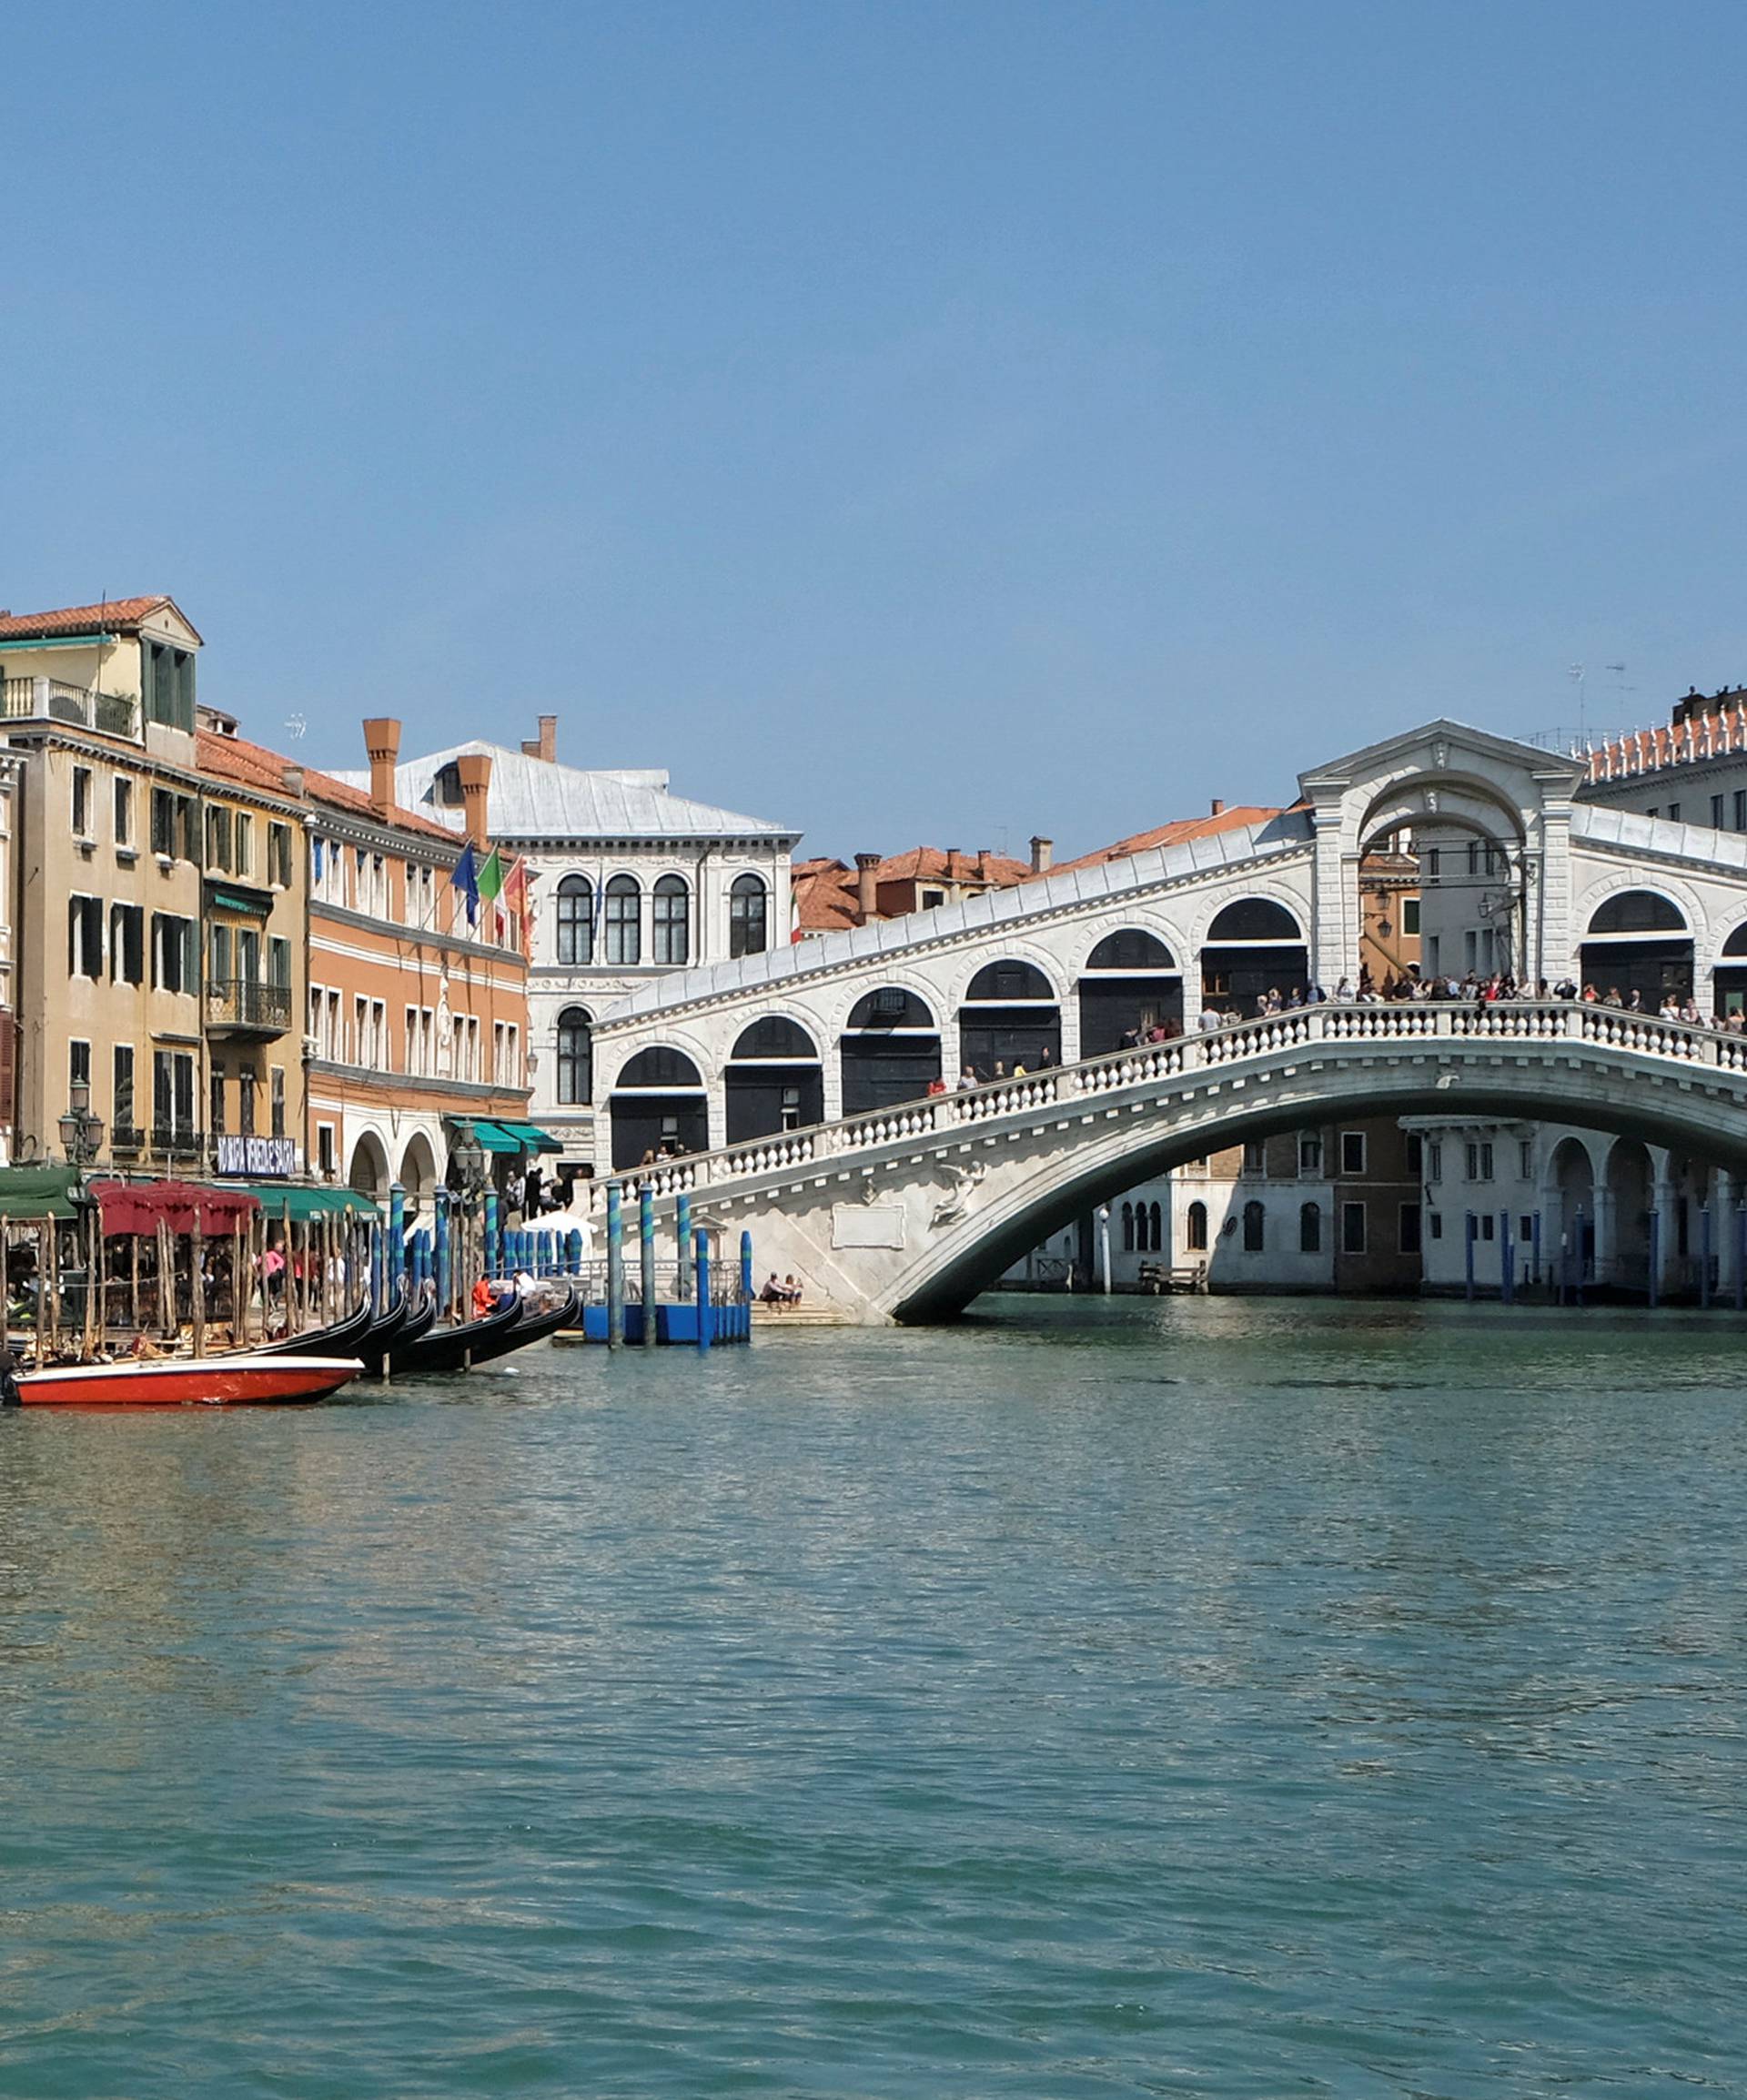 The Rialto Bridge is seen in Venice